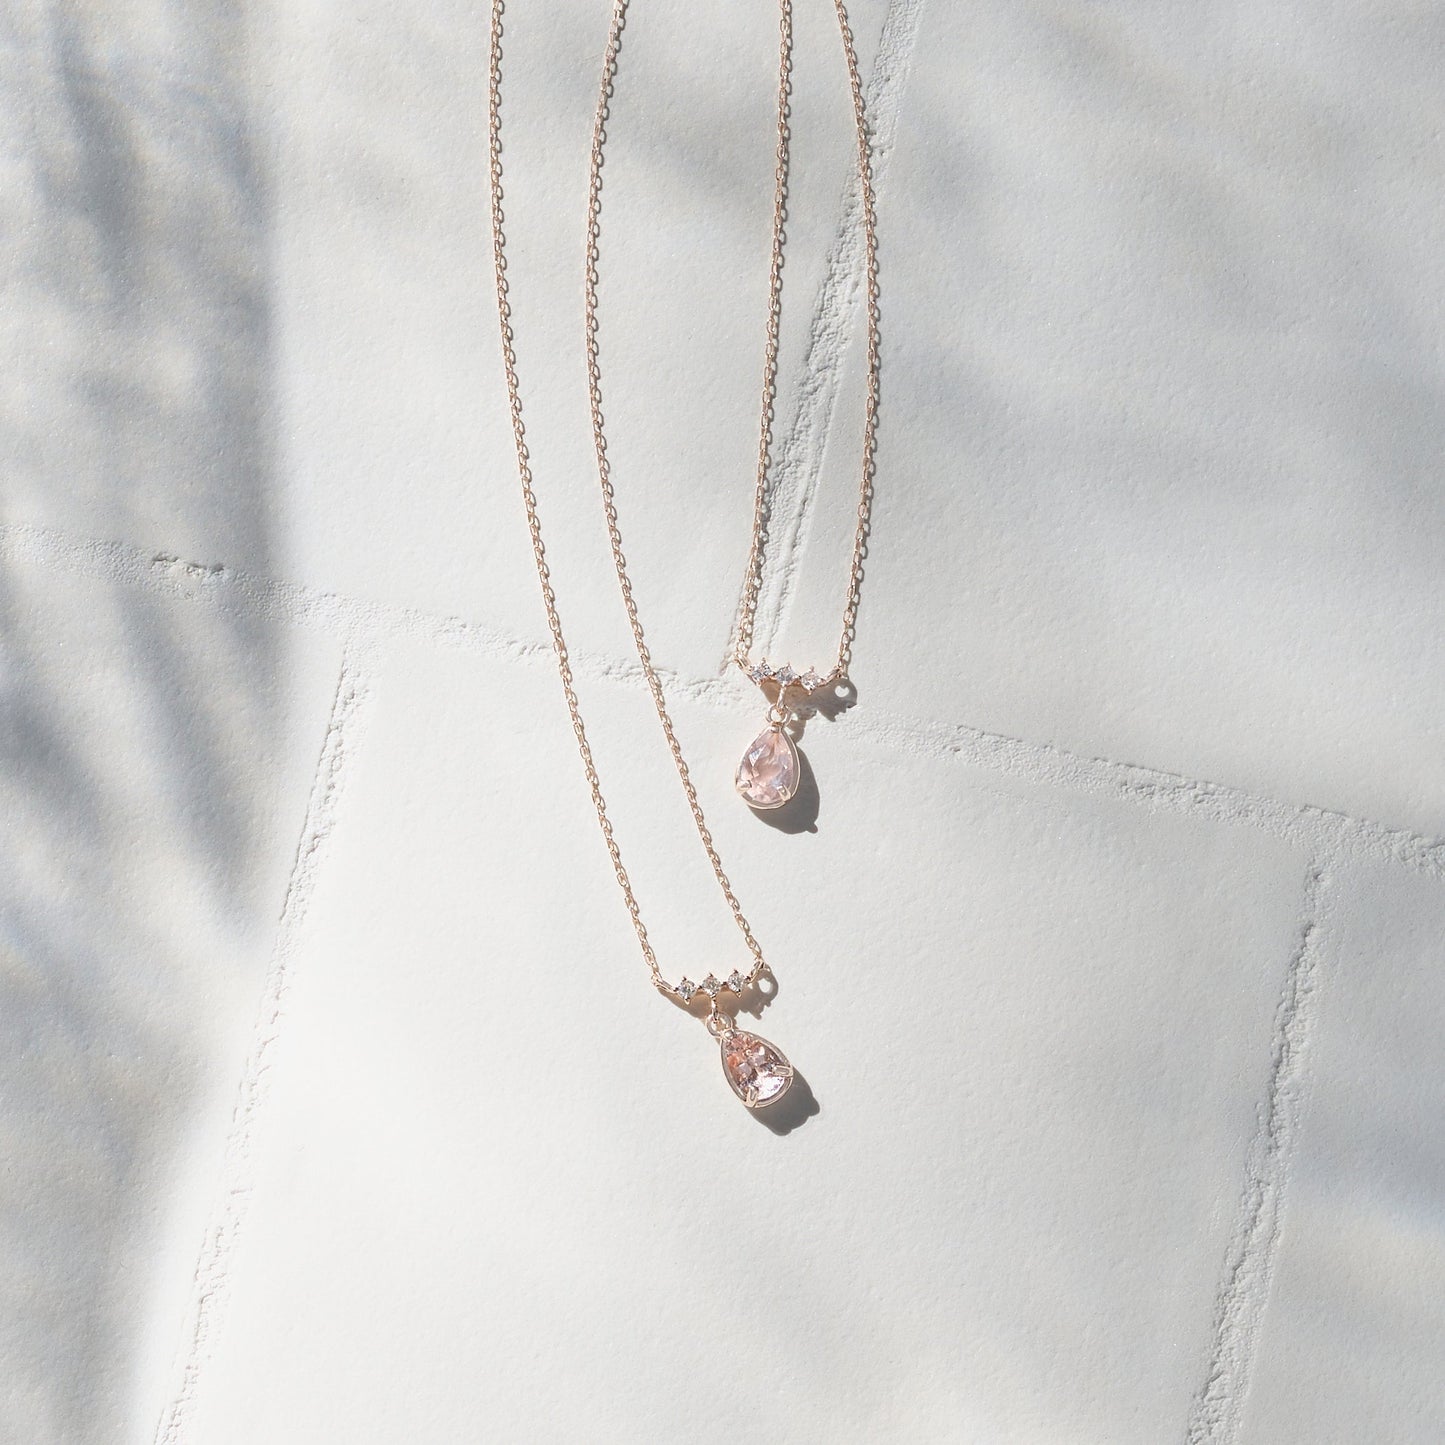 10 Karat Pink Gold Morganite Necklace｜60-9408